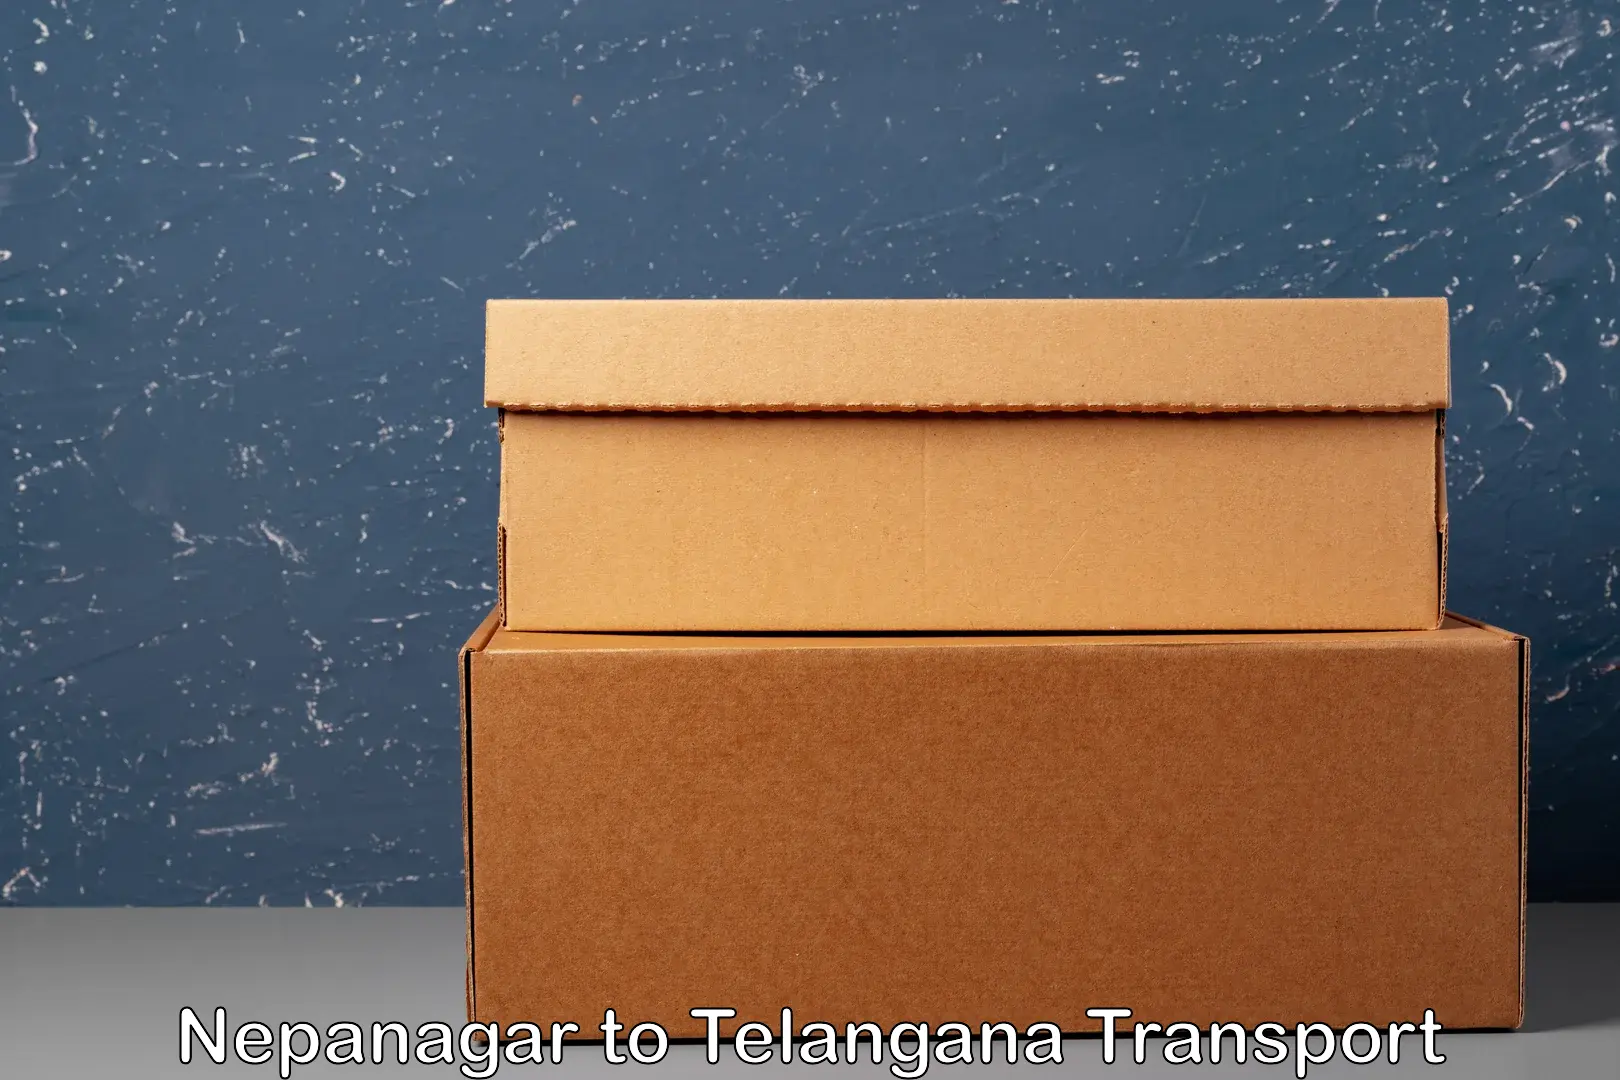 Commercial transport service Nepanagar to Narsapur Medak